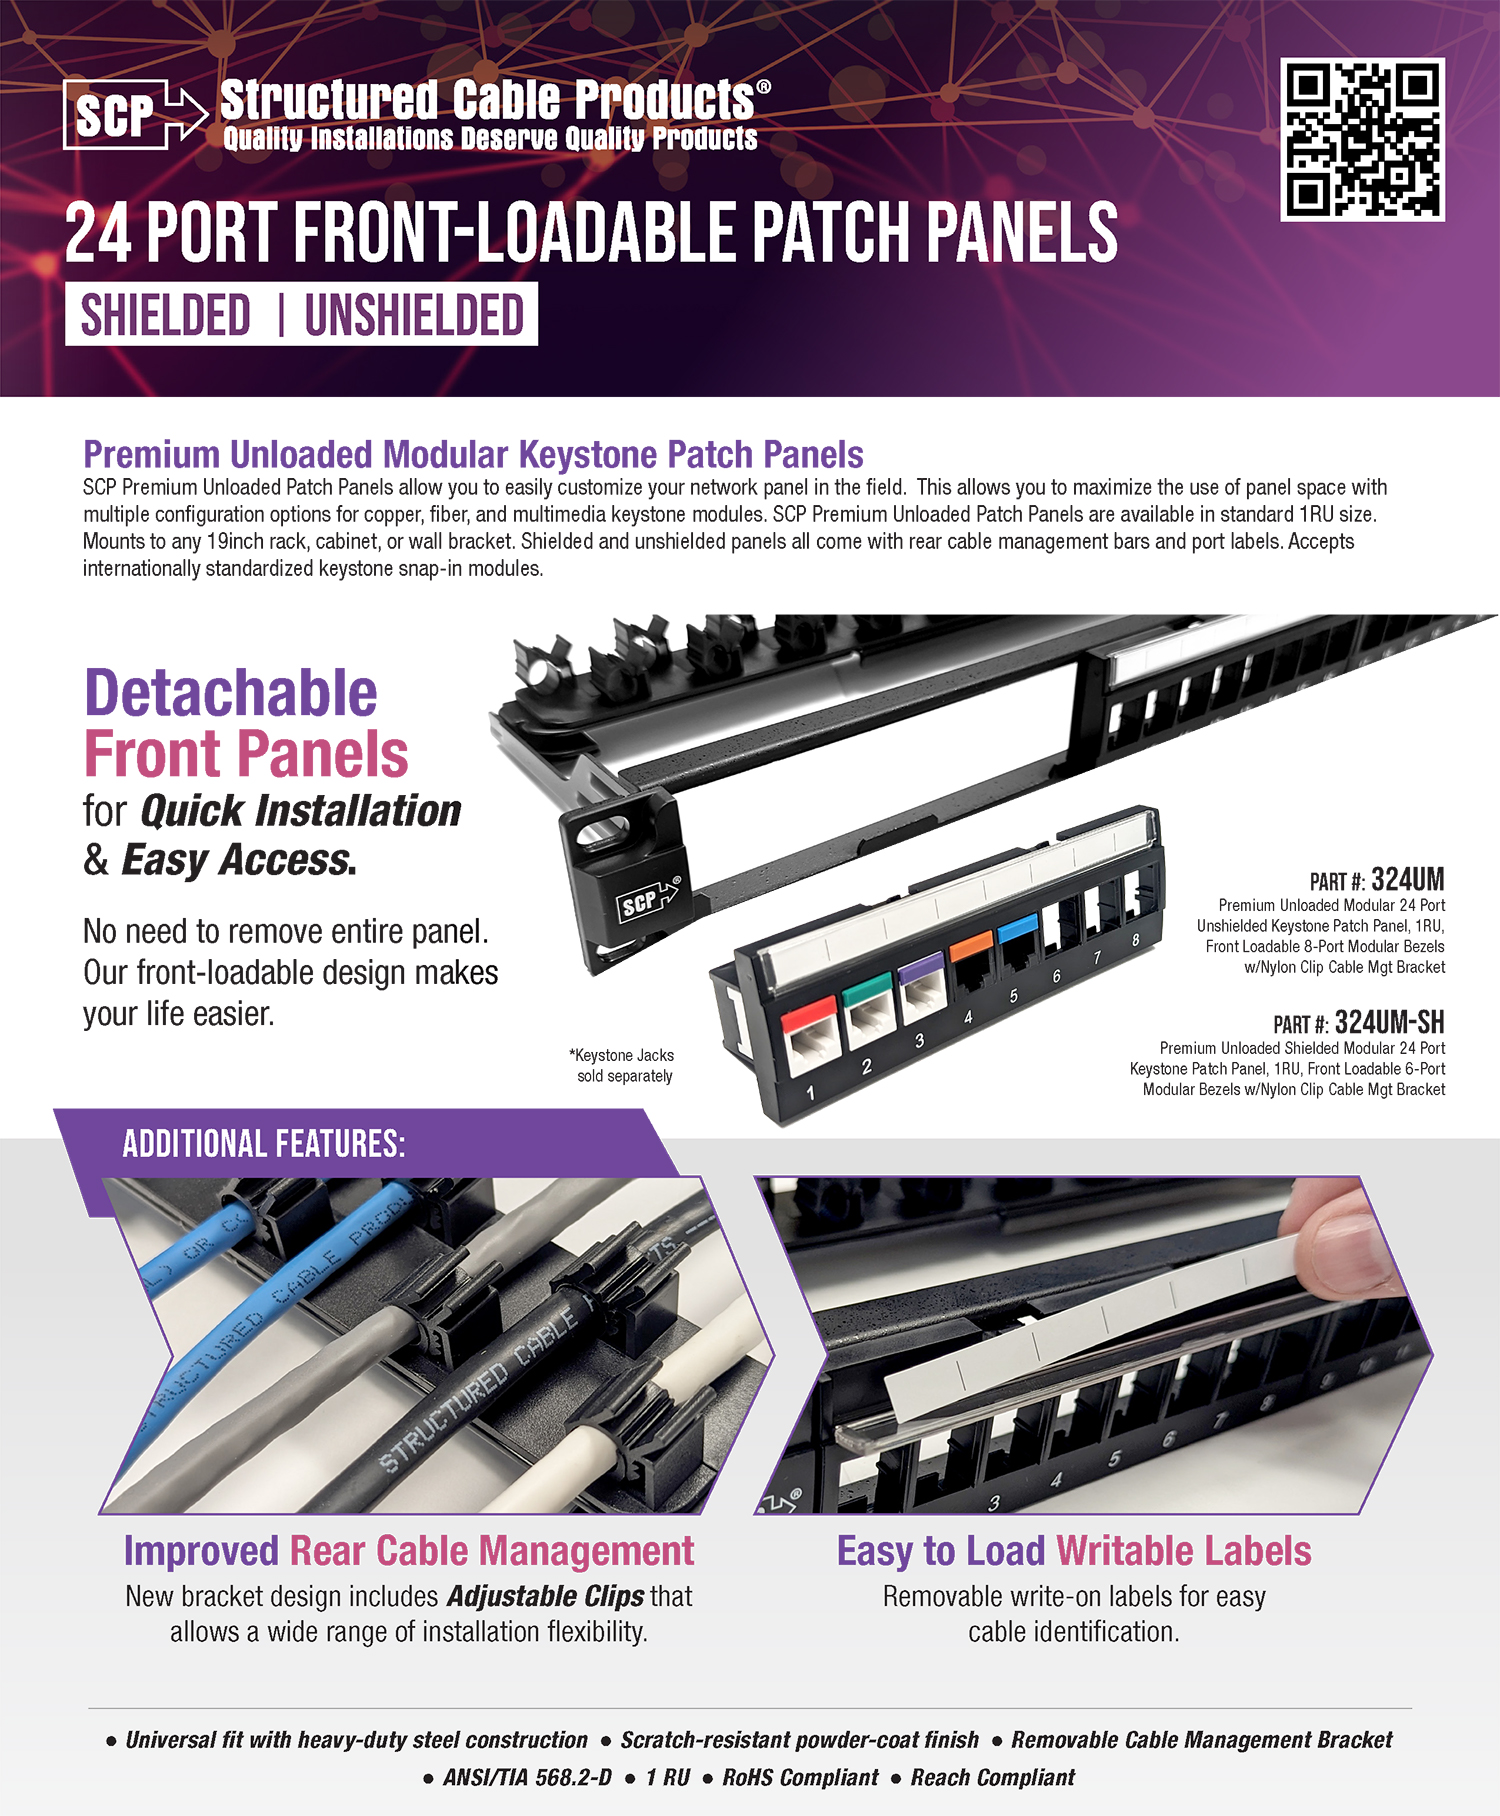 24 Port Front-Loadable Patch Panels